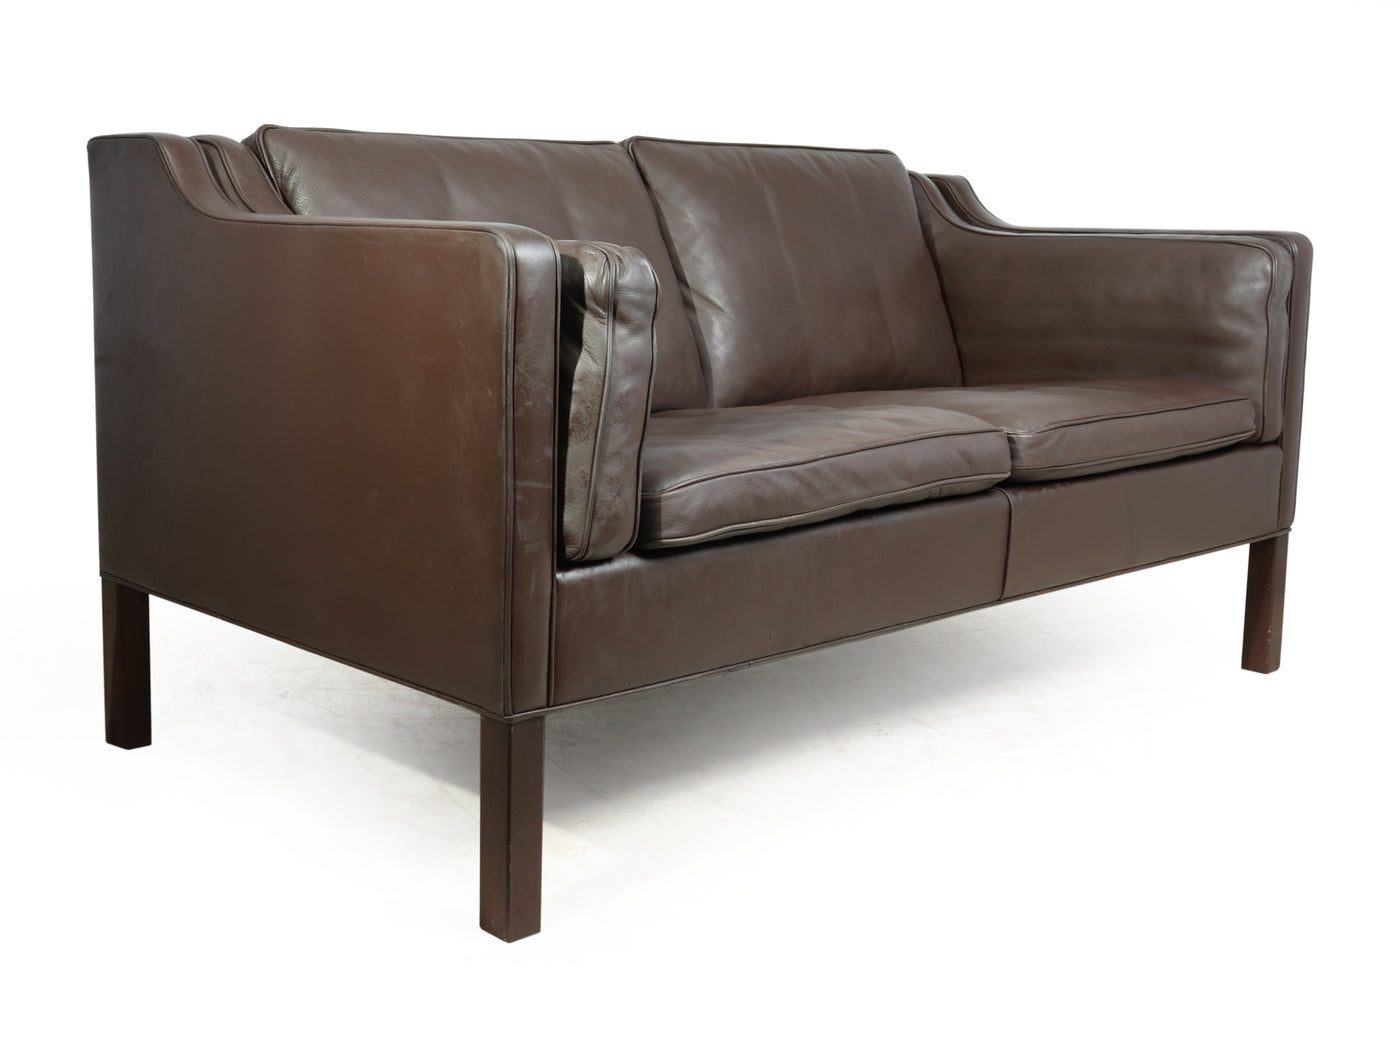 Model 2212 Sofa by Borge Mogensen for Fredricia 